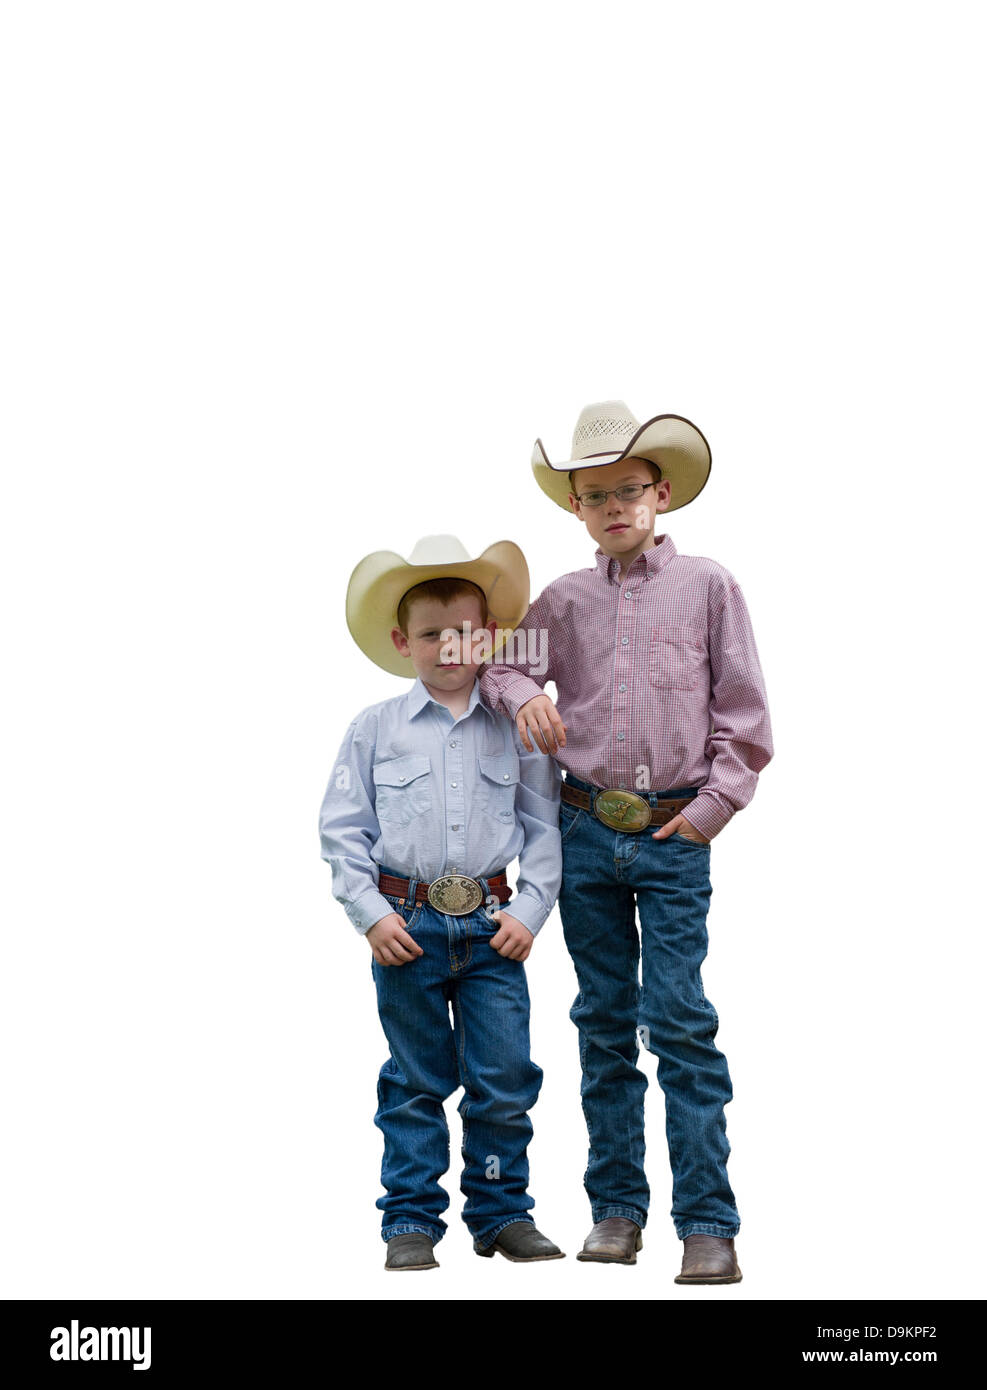 Vaqueros jóvenes Imágenes recortadas de stock - Alamy